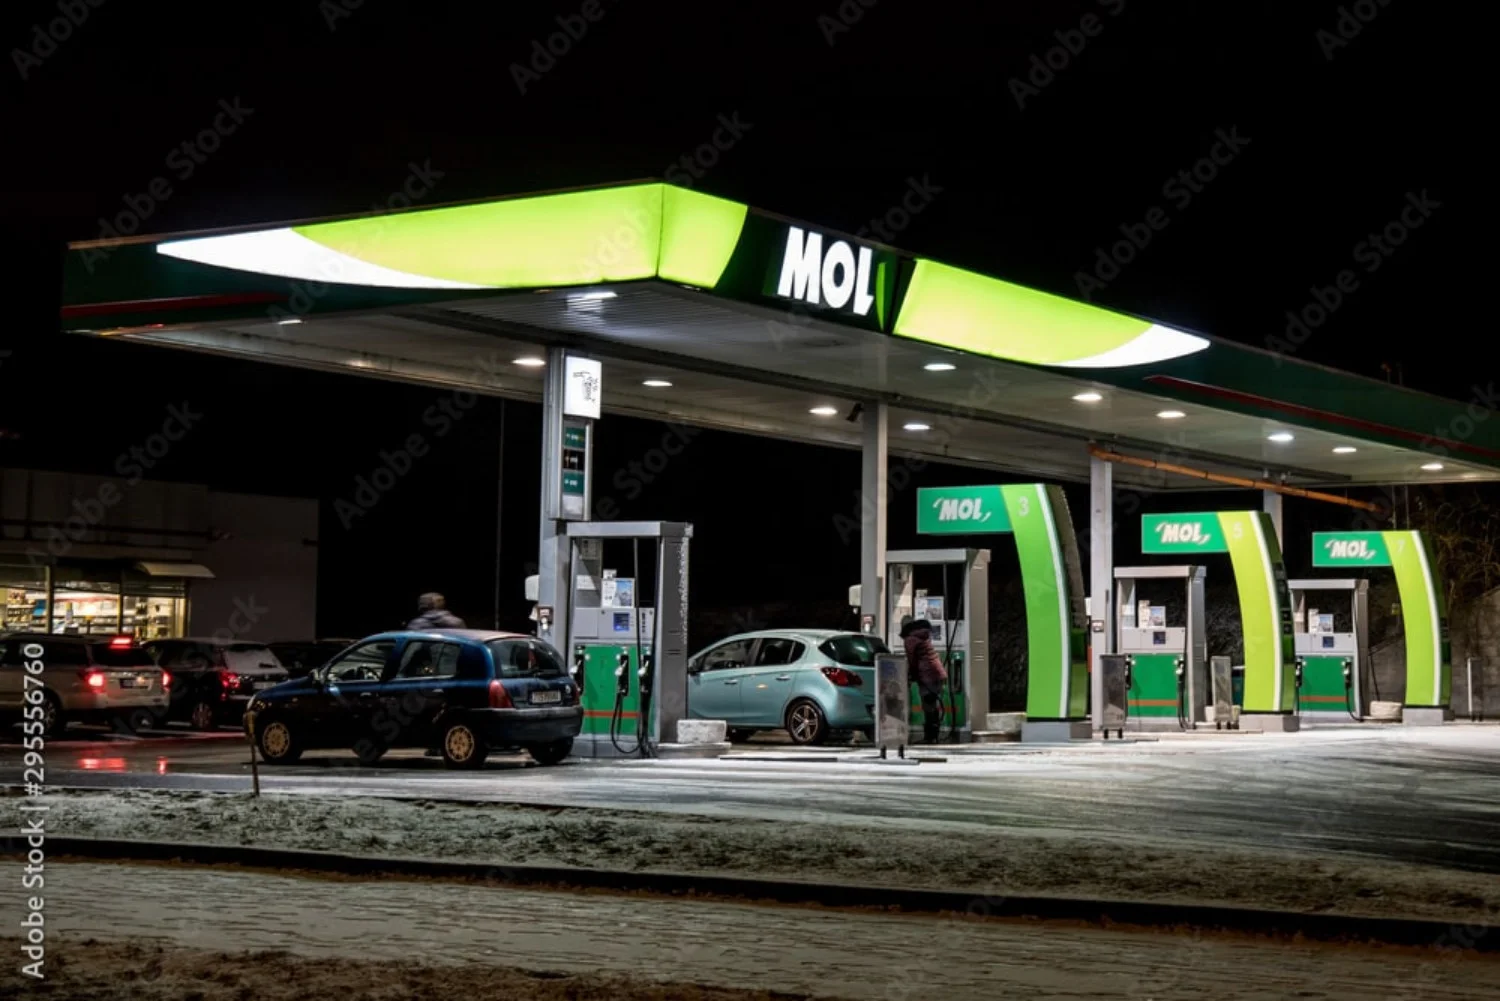 MOL-Tankstellen bieten eine Reihe von Dienstleistungen an, die über die Bereitstellung von Kraftstoff hinausgehen und die Fahrt bequemer machen.